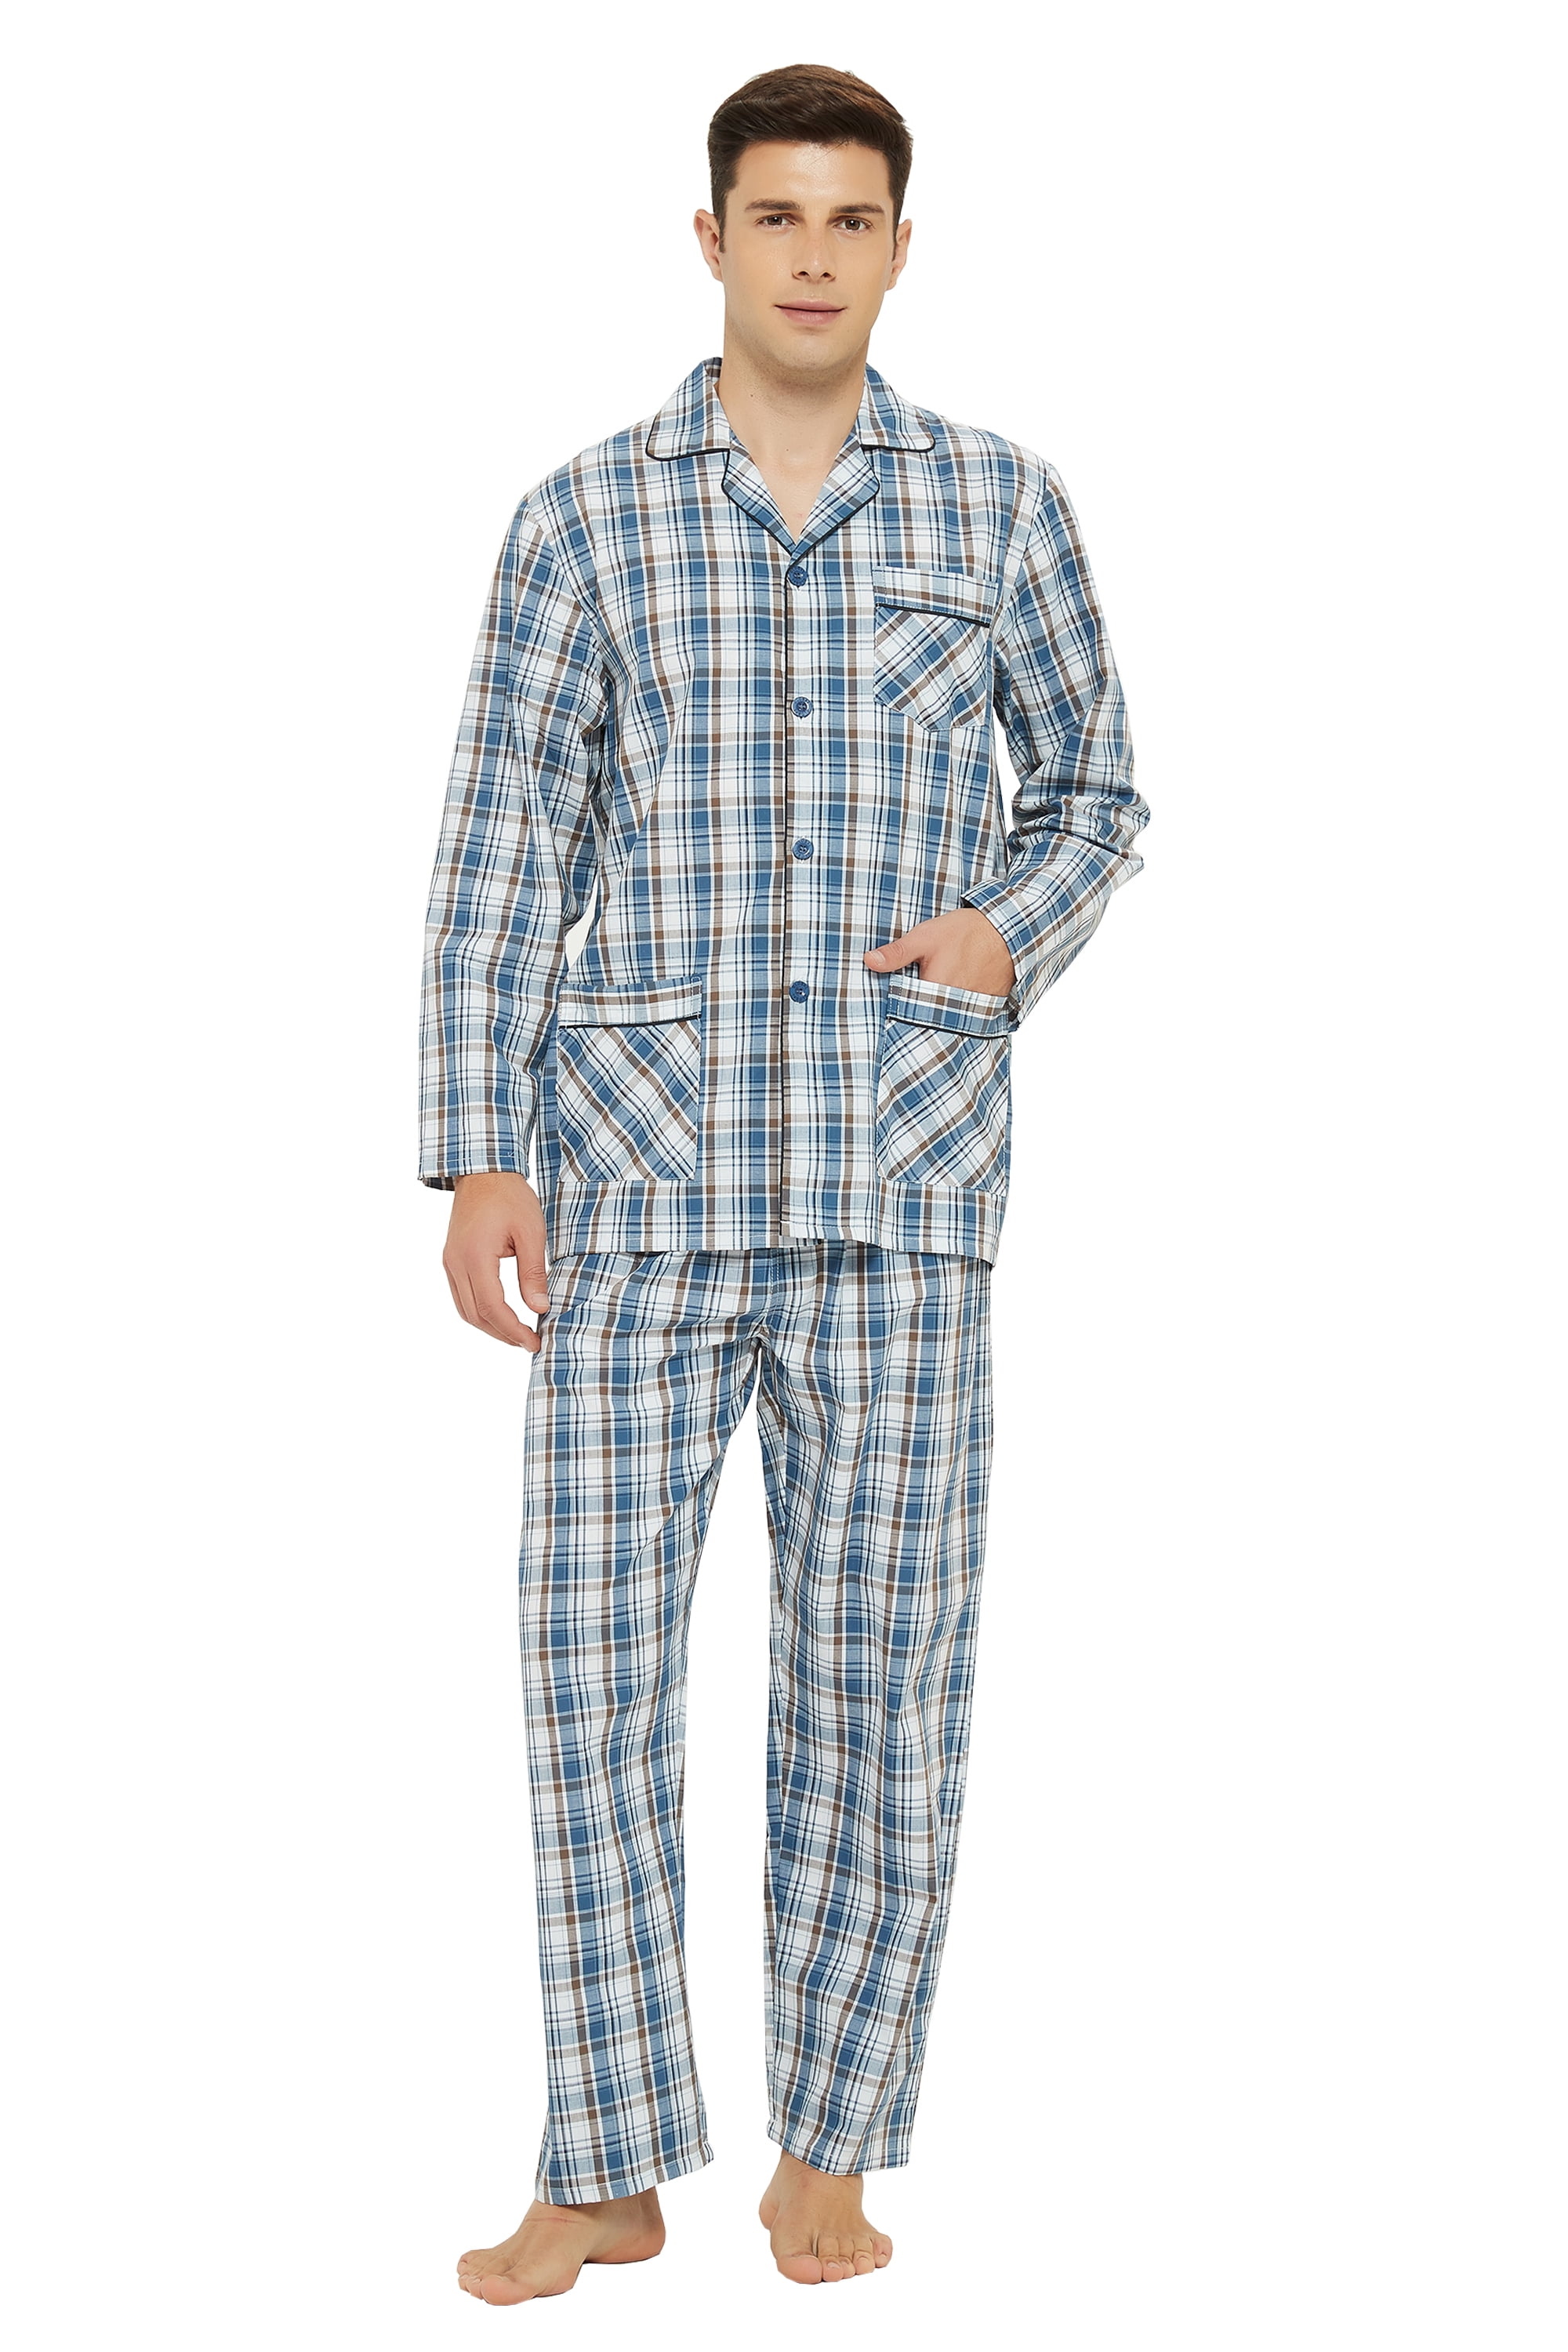 GLOBAL Mens Pajamas Set 100% Cotton Yarn Drawstring Sleepwear Set with ...